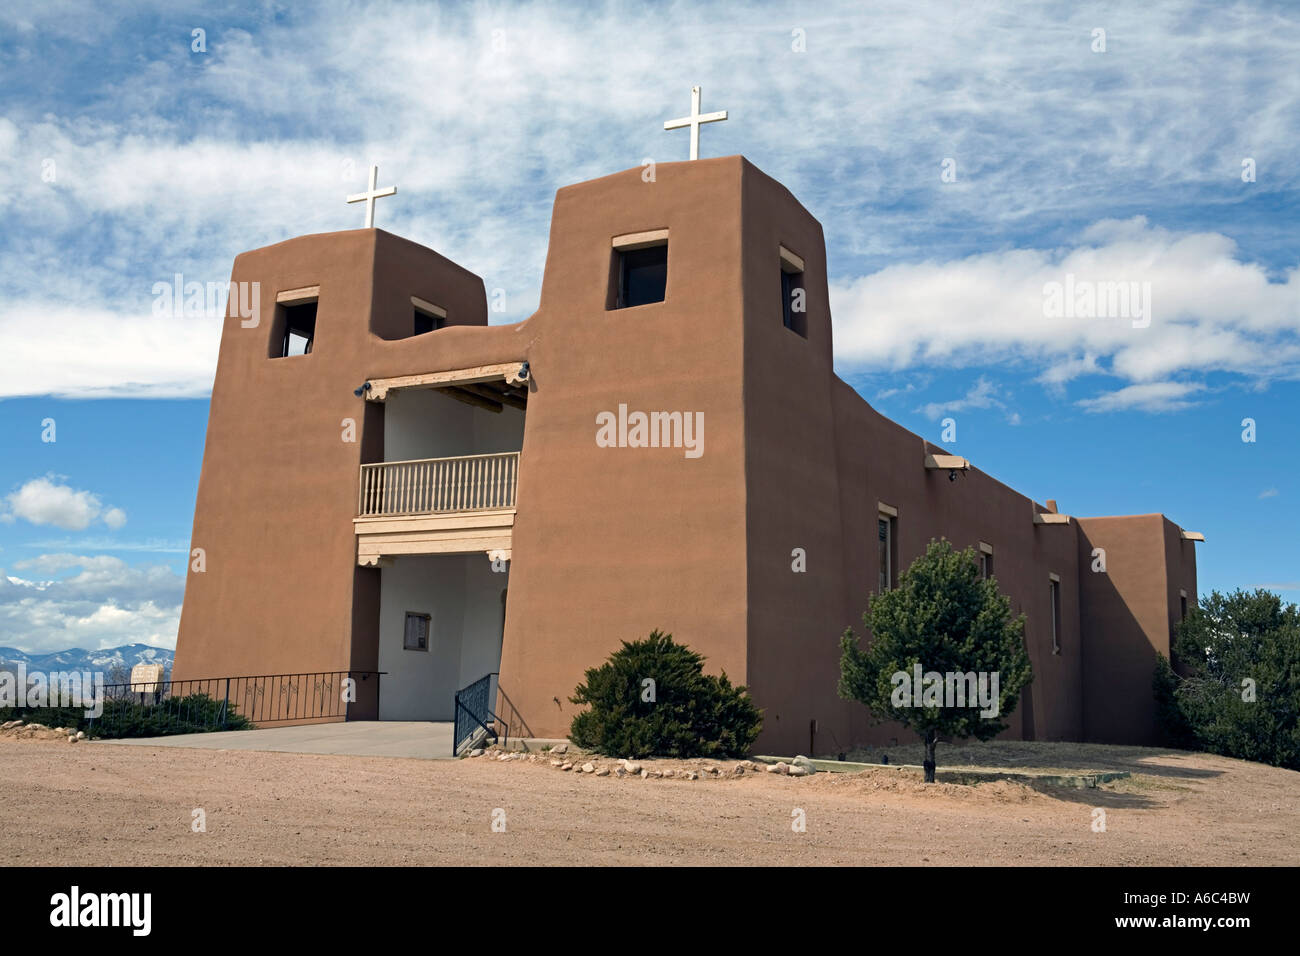 El Sagrado Corazon de la mission ou église catholique du Sacré-Cœur dans les Taillères Nouveau Mexique Banque D'Images